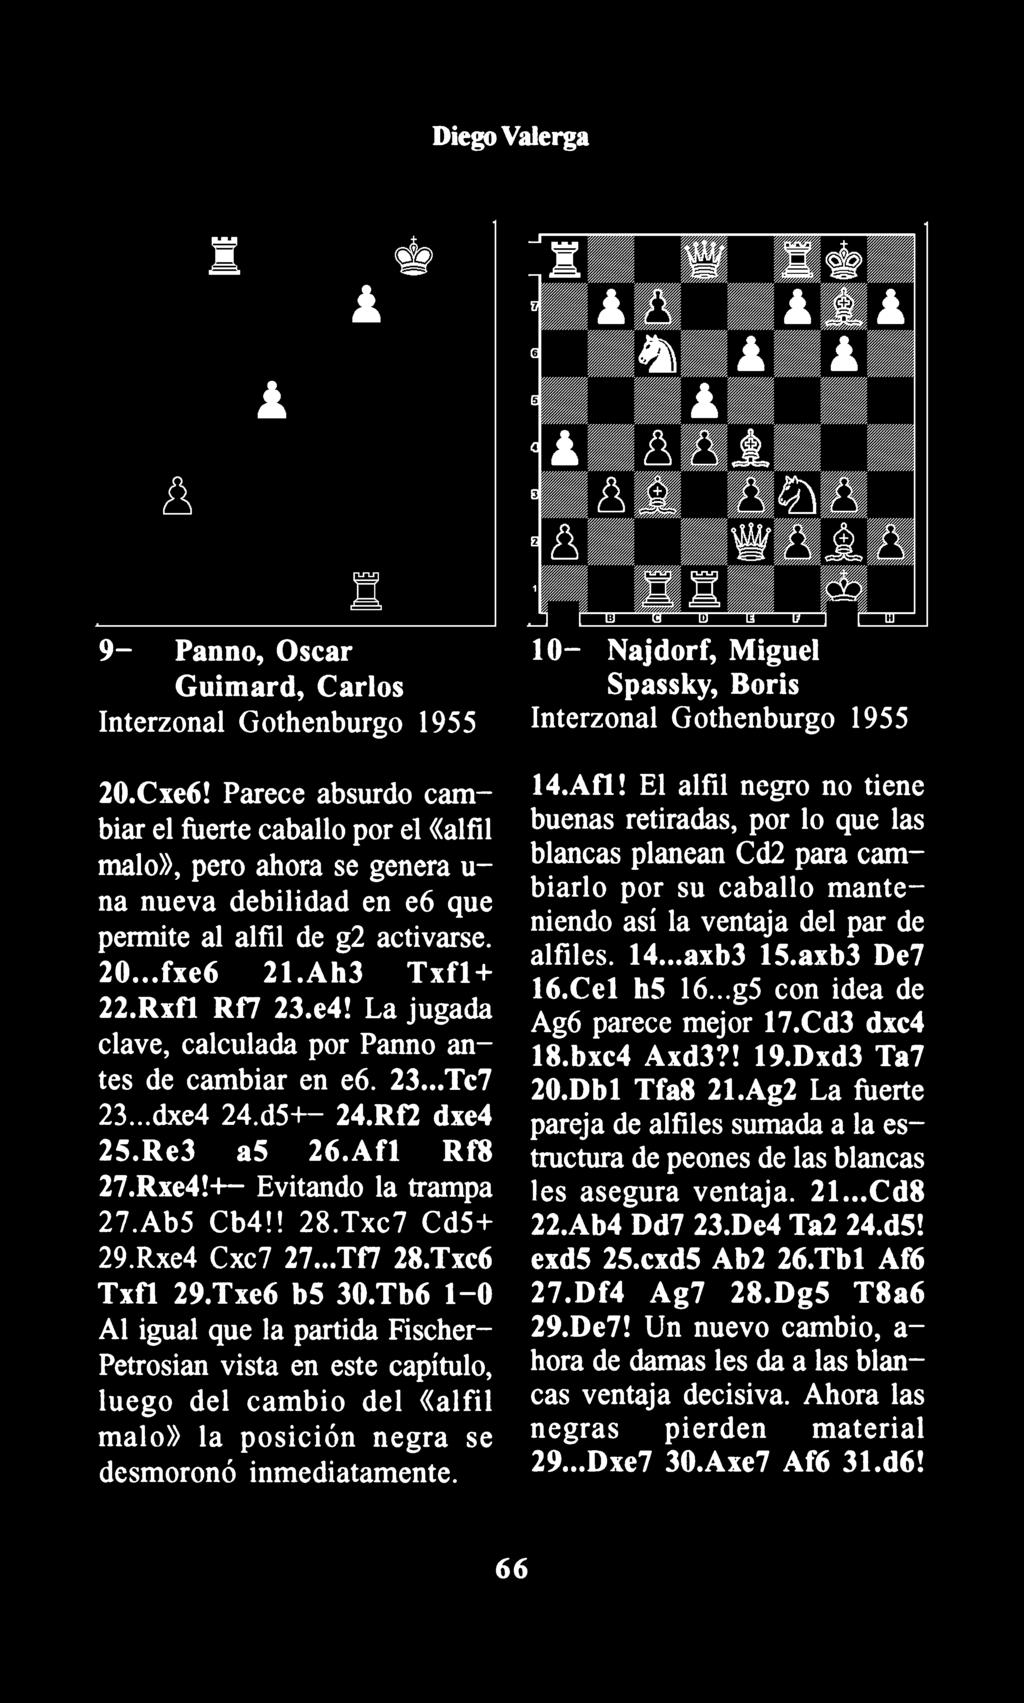 La jugada clave, calculada por Panno antes de cambiar en e6. 23... Tc7 23... dxe4 24.d5+- 24.Rf2 dxe4 2S.Re3 as 26.Afl Rf8 27.Rxe4!+- Evitando la trampa 27.Ab5 Cb4!! 28.Txc7 Cd5+ 29.Rxe4 Cxc7 27.